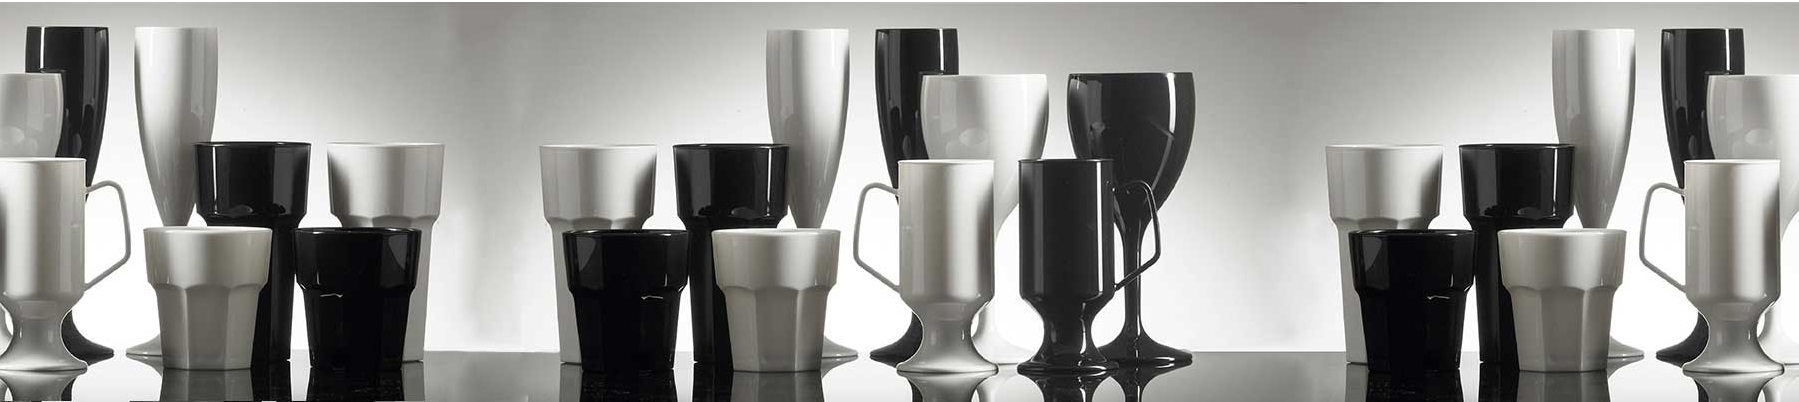 coloured-plastic-glassware-barware - black white